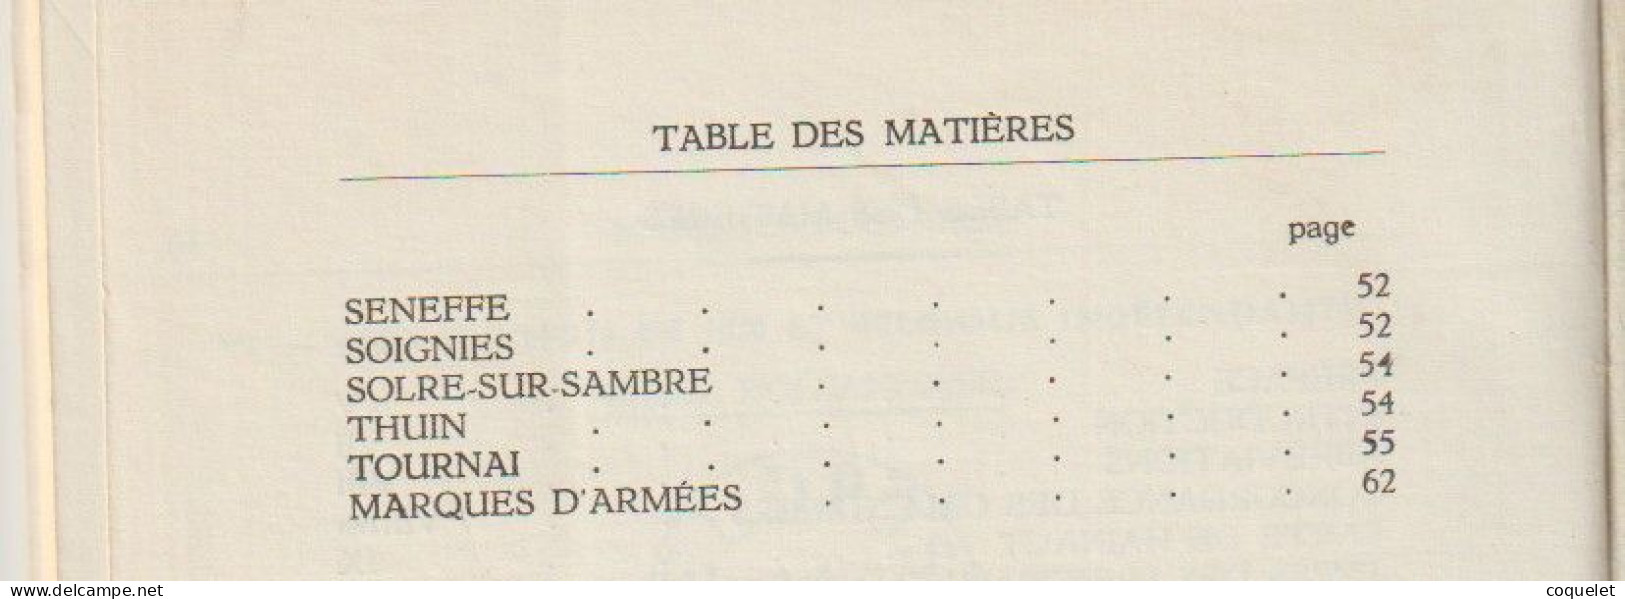 Catalogue Des Marques Postales Du Hainaut De 1648 à 1849 EXdépartement De JEMAPPES  Par Lucien HERLANT Livre De 70 Pages - Matasellos